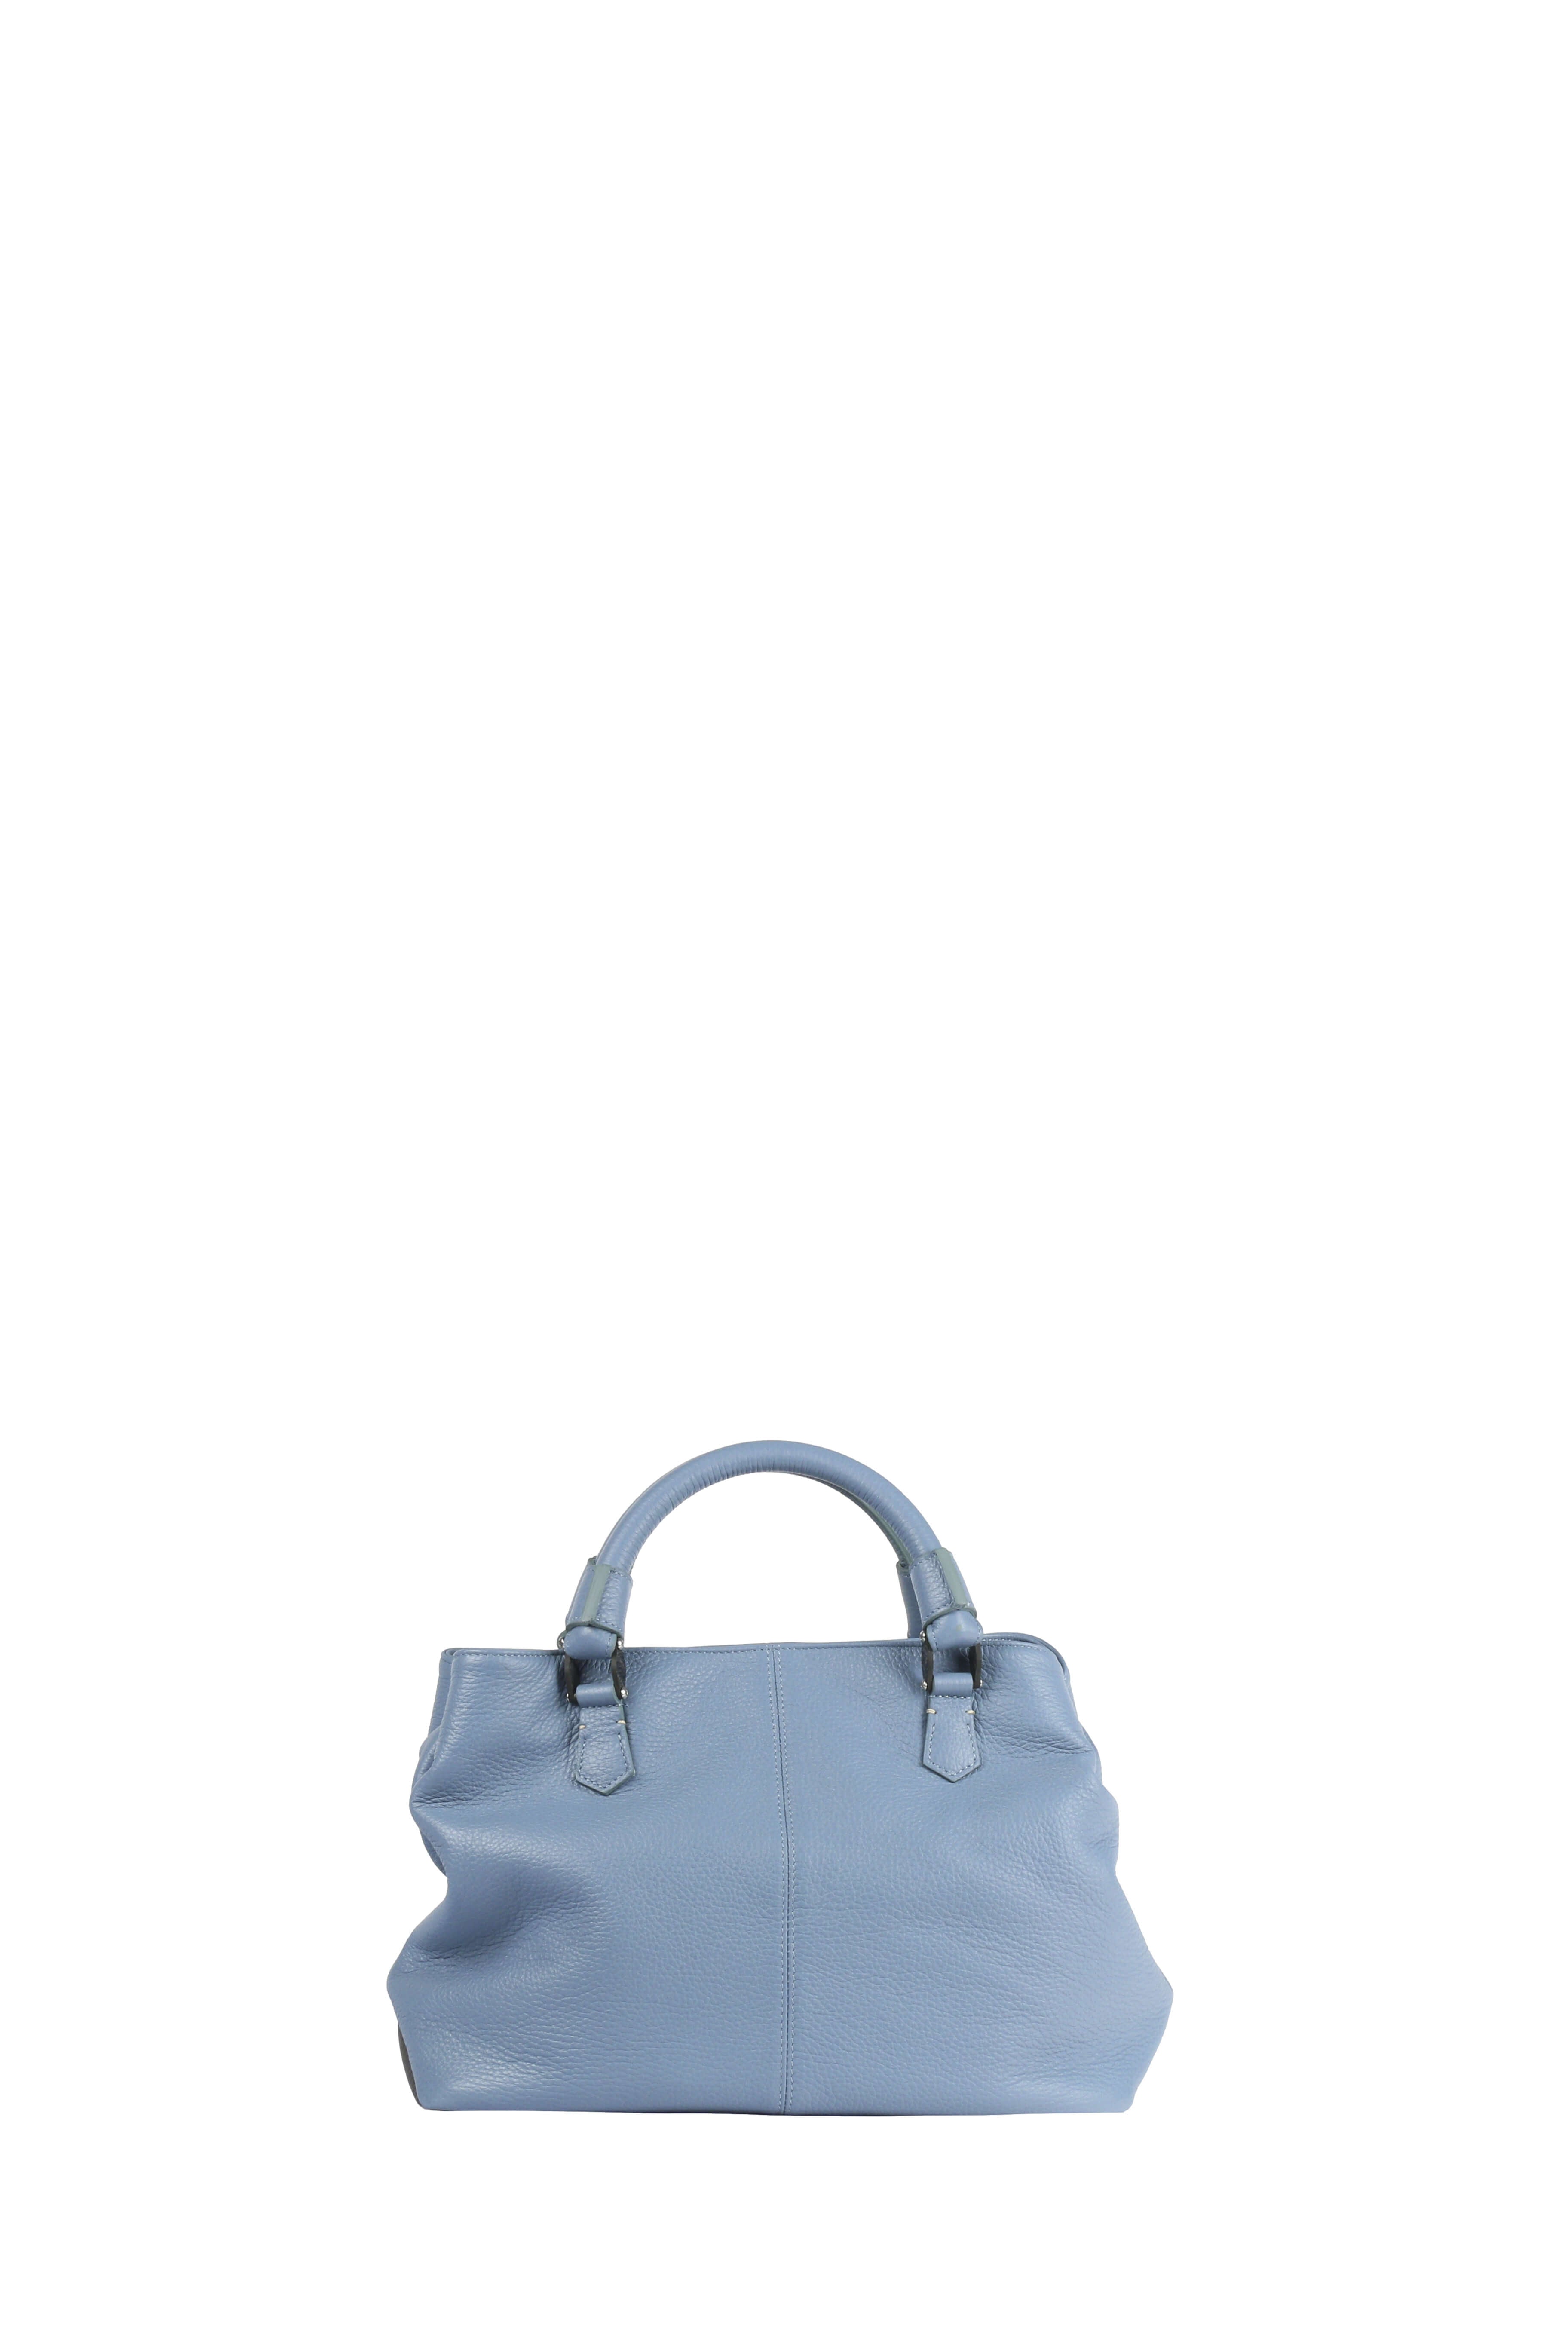 Ormeggia Deer Leather Hand Bag, Sky blue